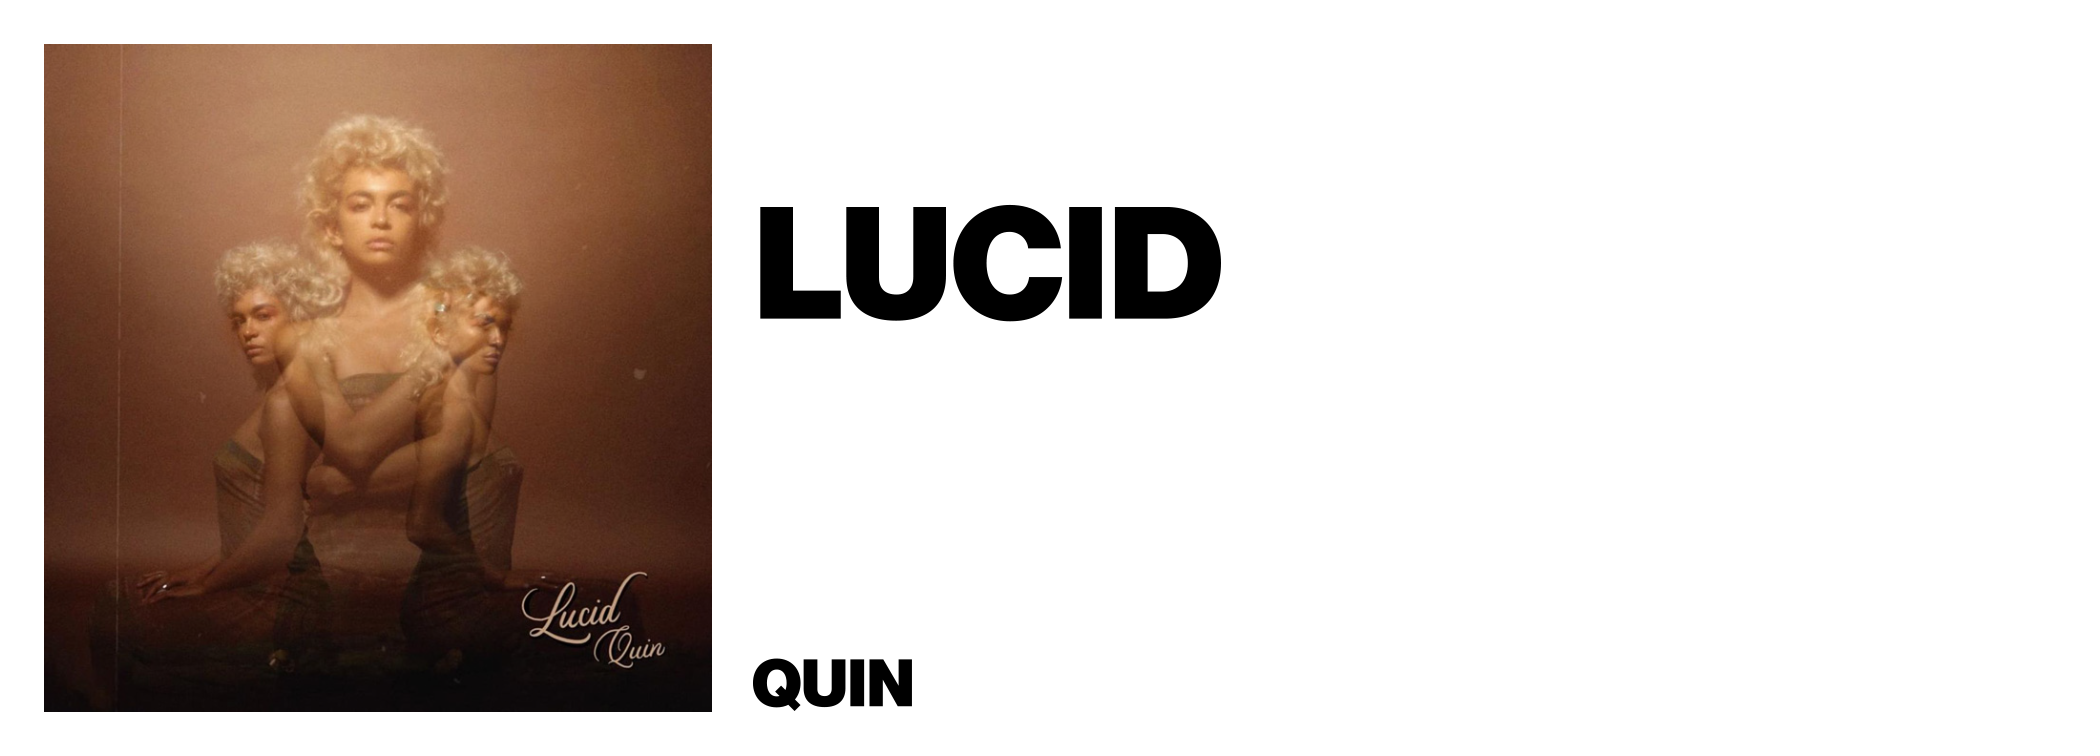 1576878337018-QUIN-Lucid